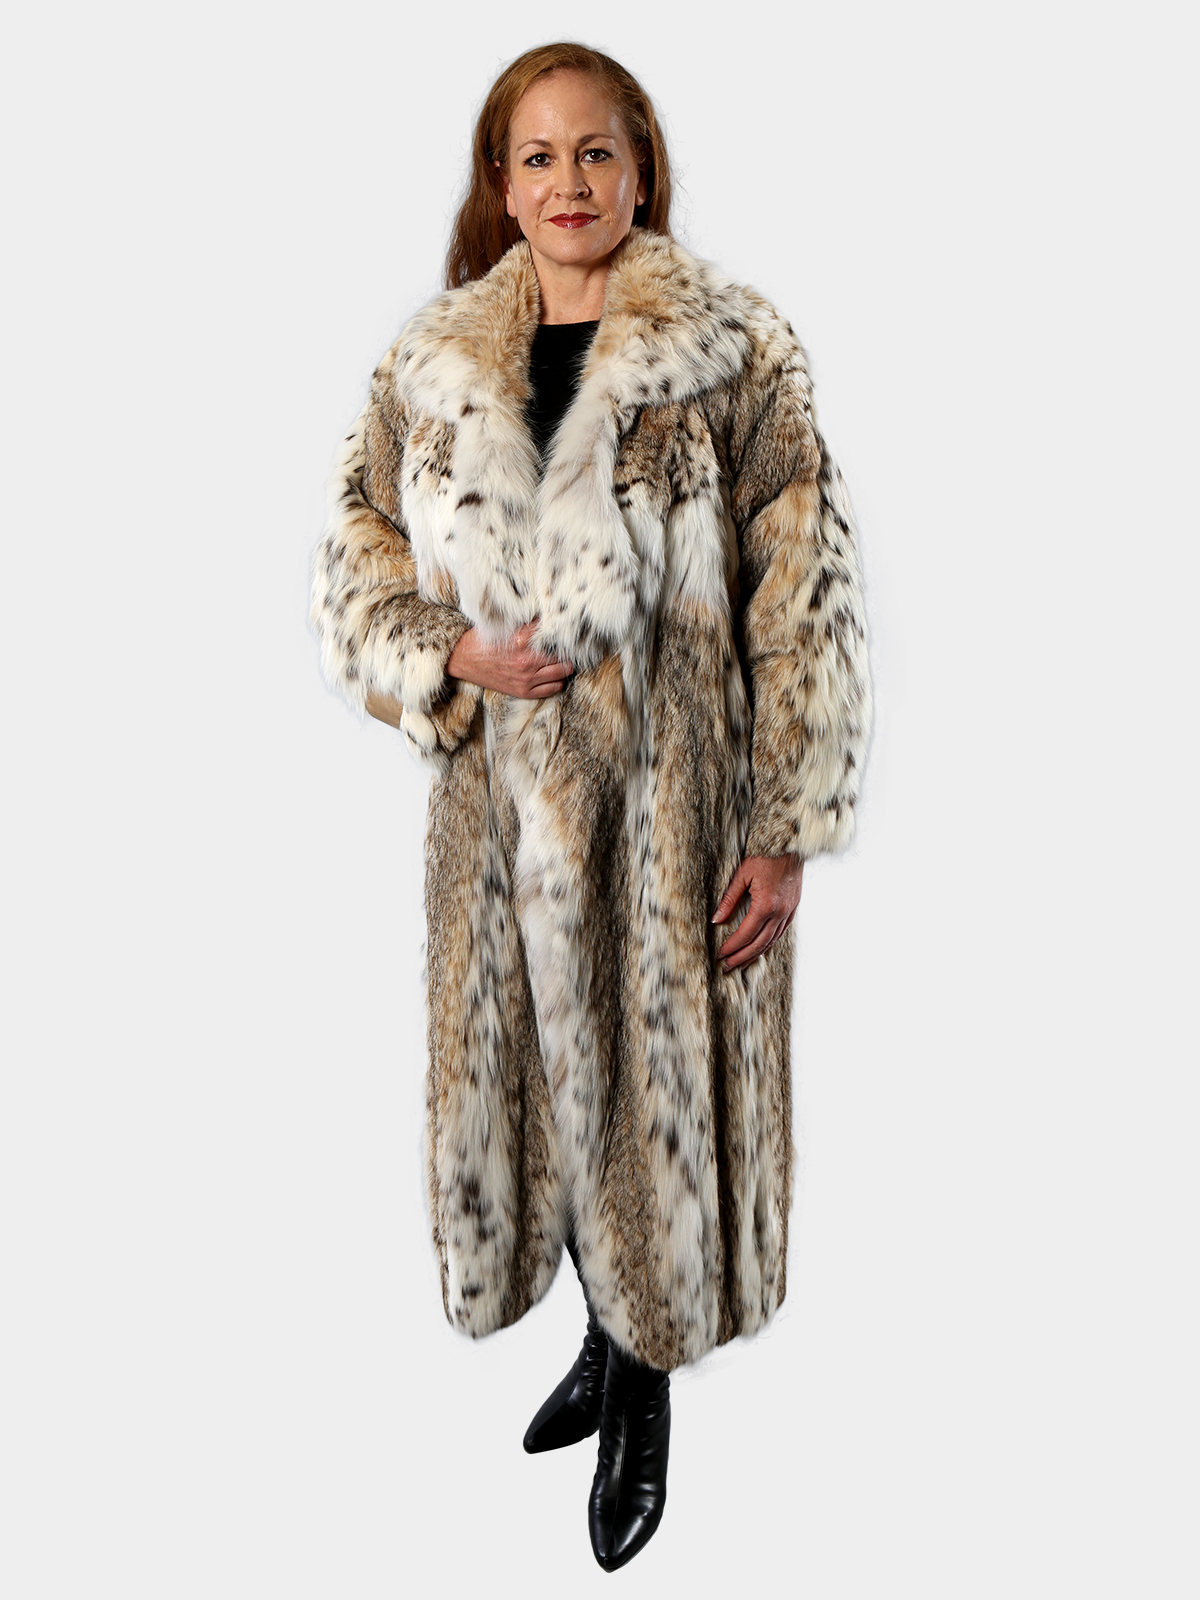 Woman's Claude Montana Cat Lynx Fur Coat